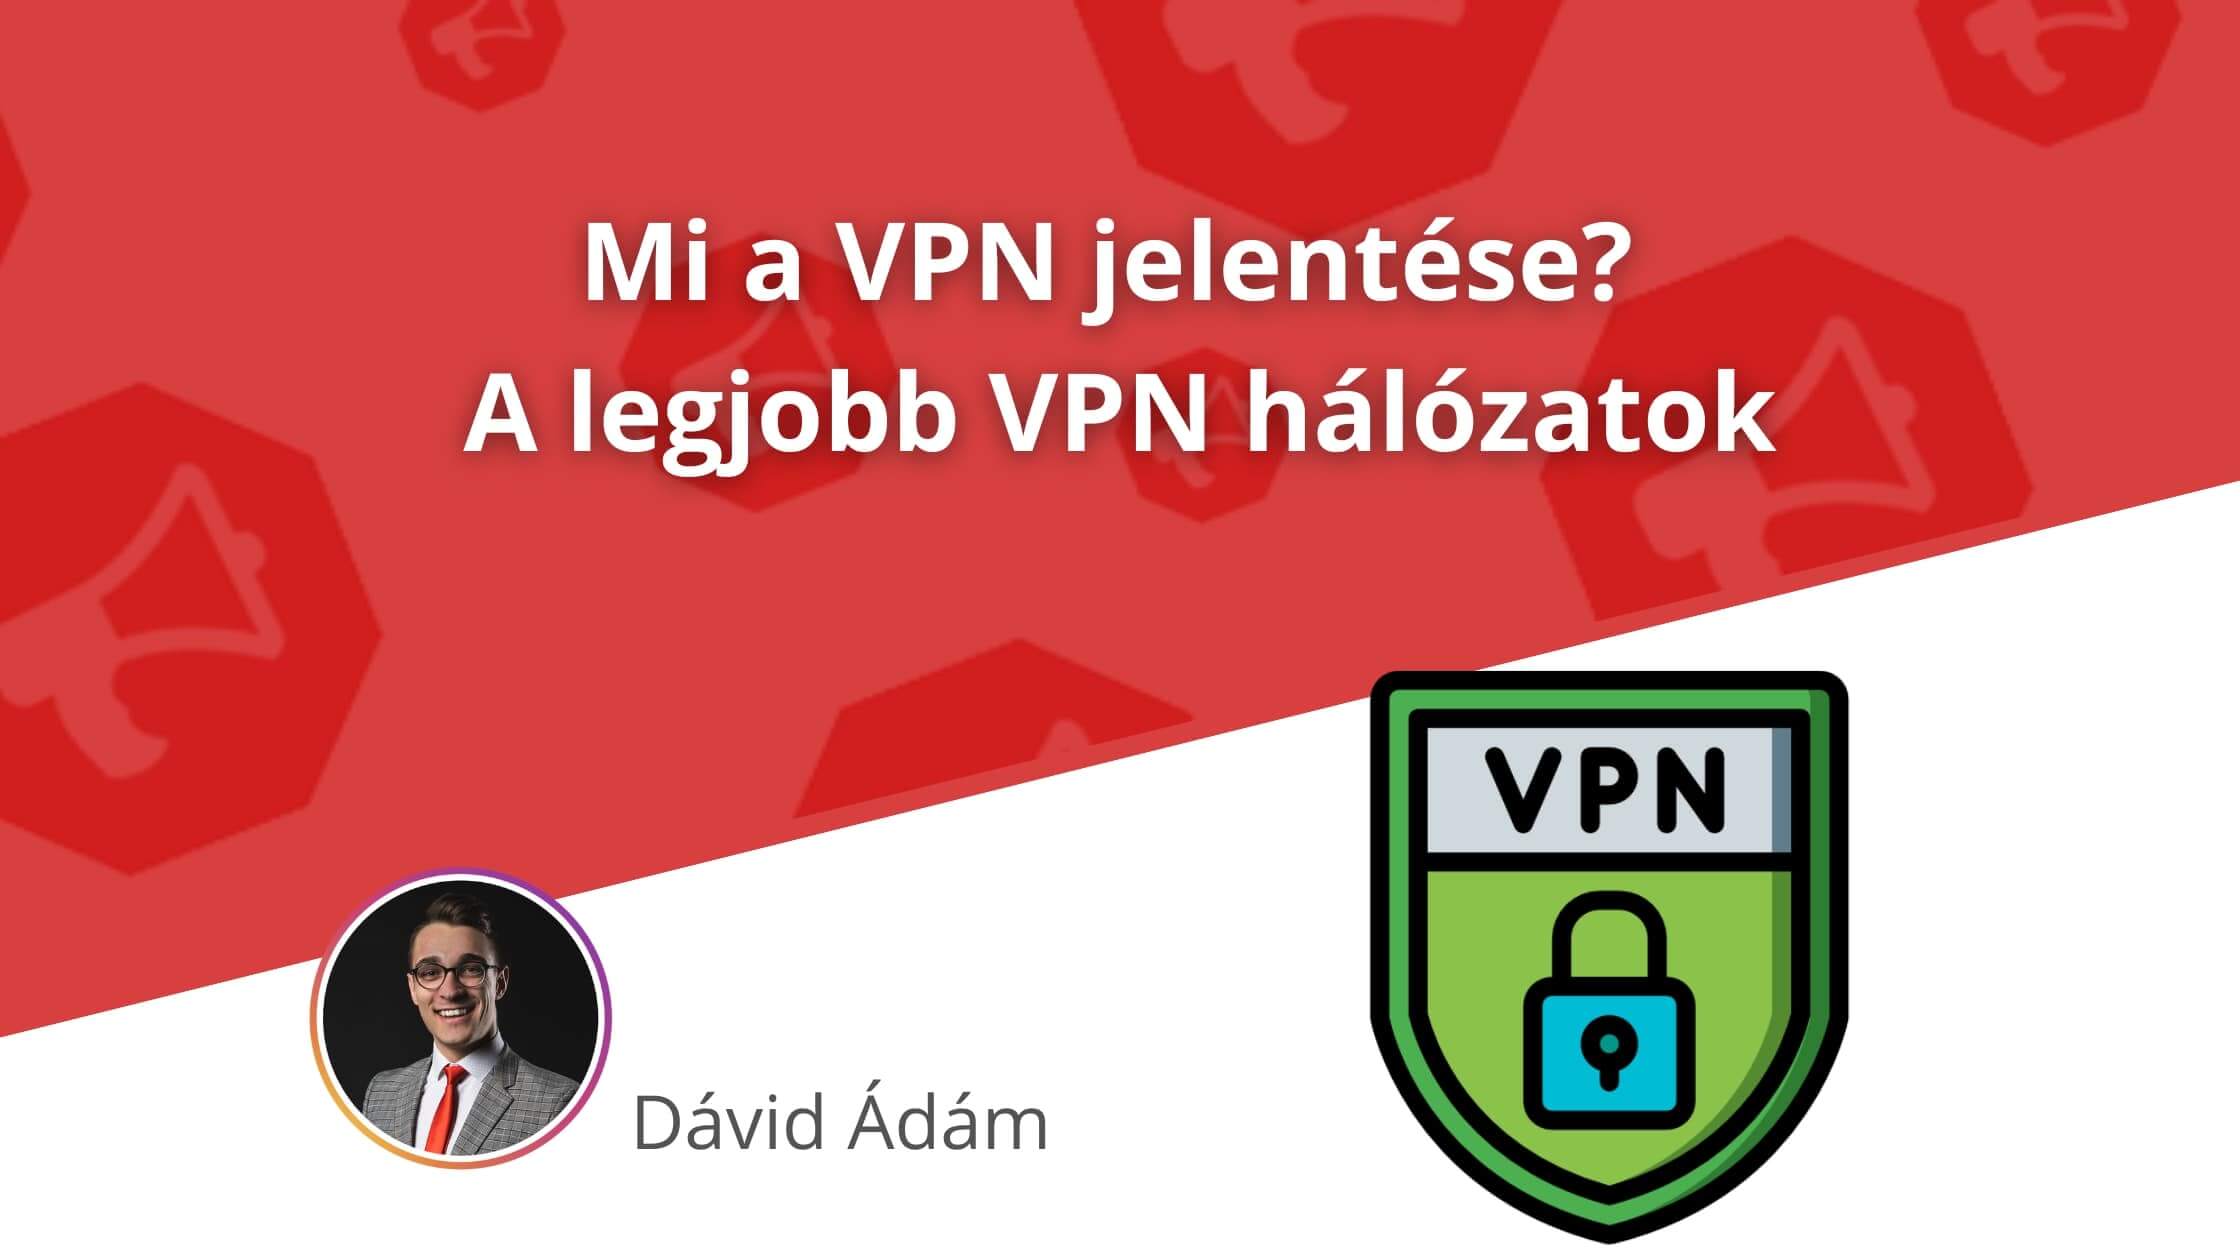 VPN jelentése